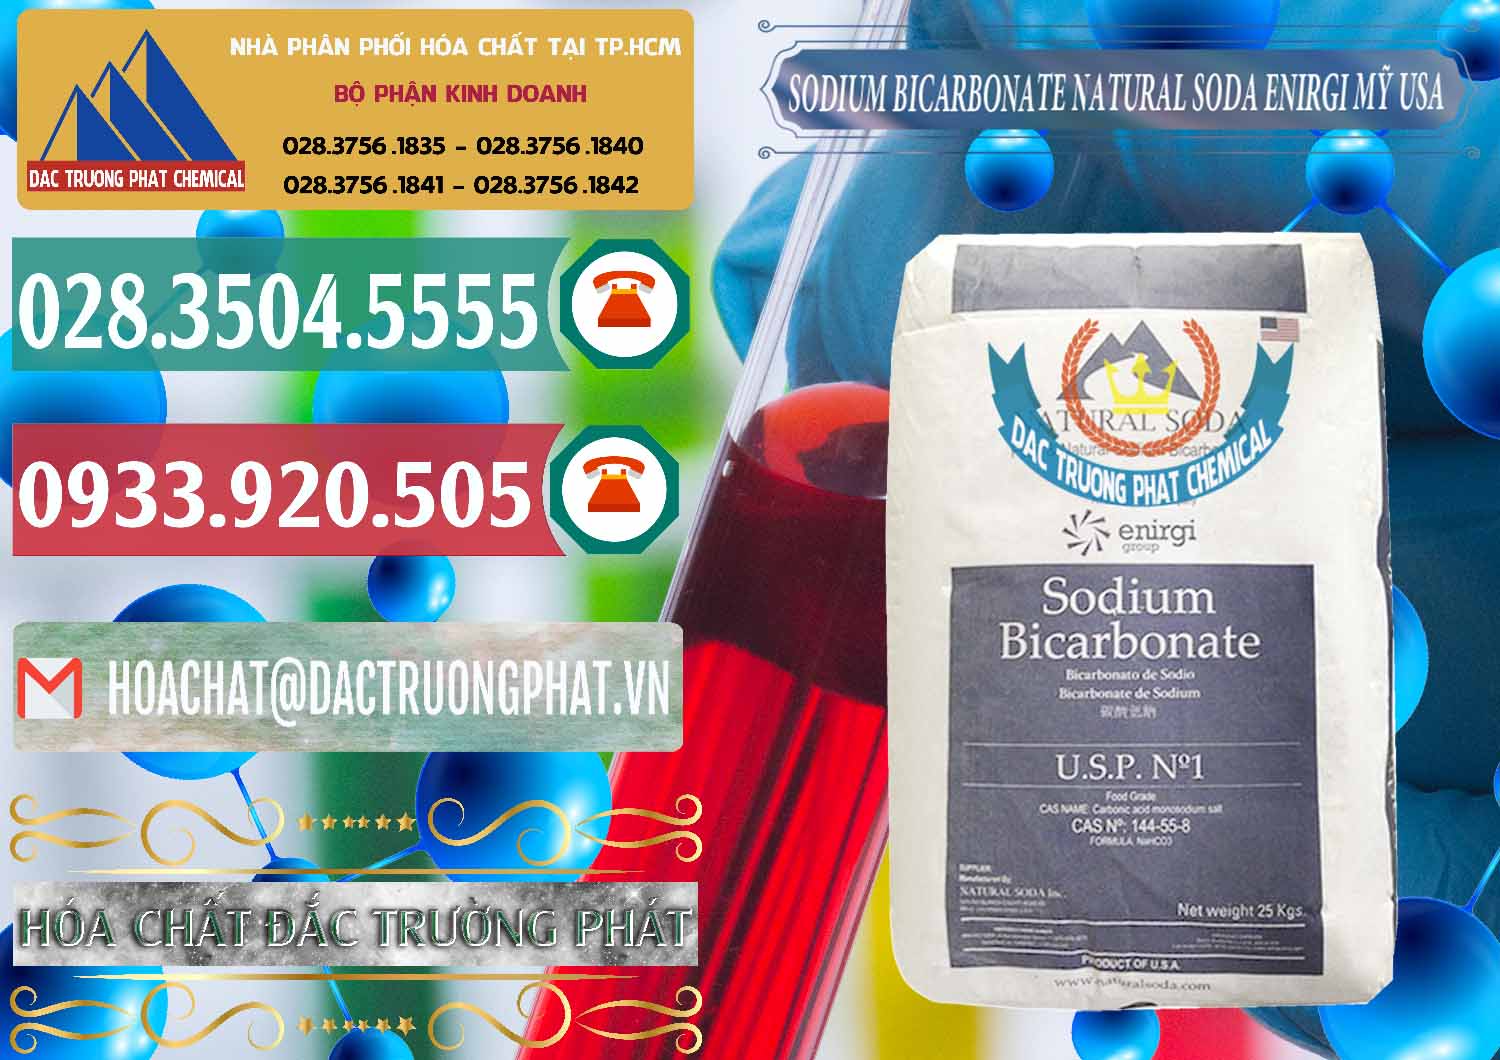 Cty chuyên phân phối - bán Sodium Bicarbonate – Bicar NaHCO3 Food Grade Natural Soda Enirgi Mỹ USA - 0257 - Đơn vị bán & cung cấp hóa chất tại TP.HCM - muabanhoachat.vn